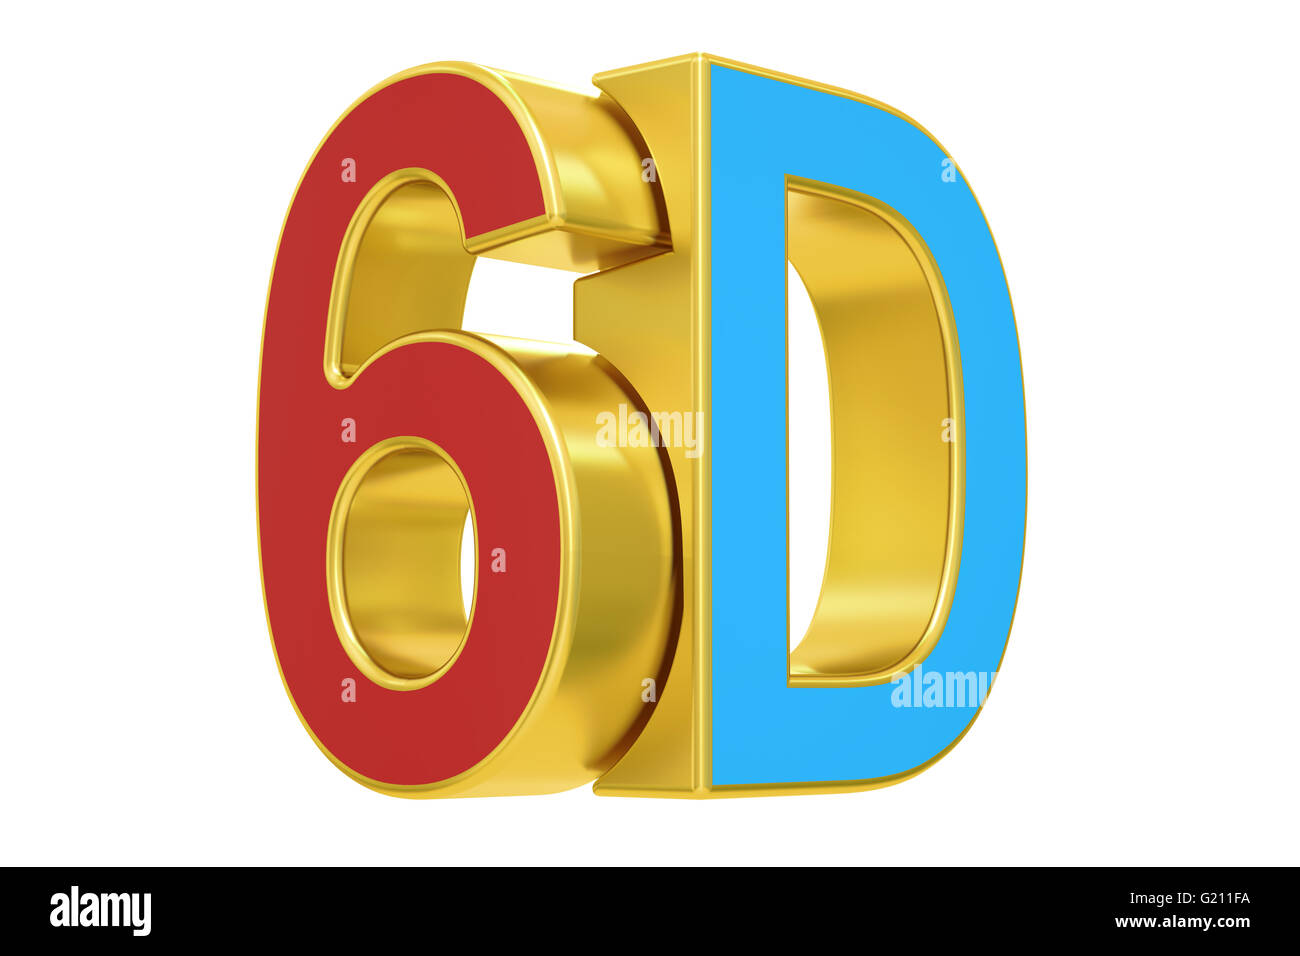 Logo 6D, rendu 3D isolé sur fond blanc Banque D'Images